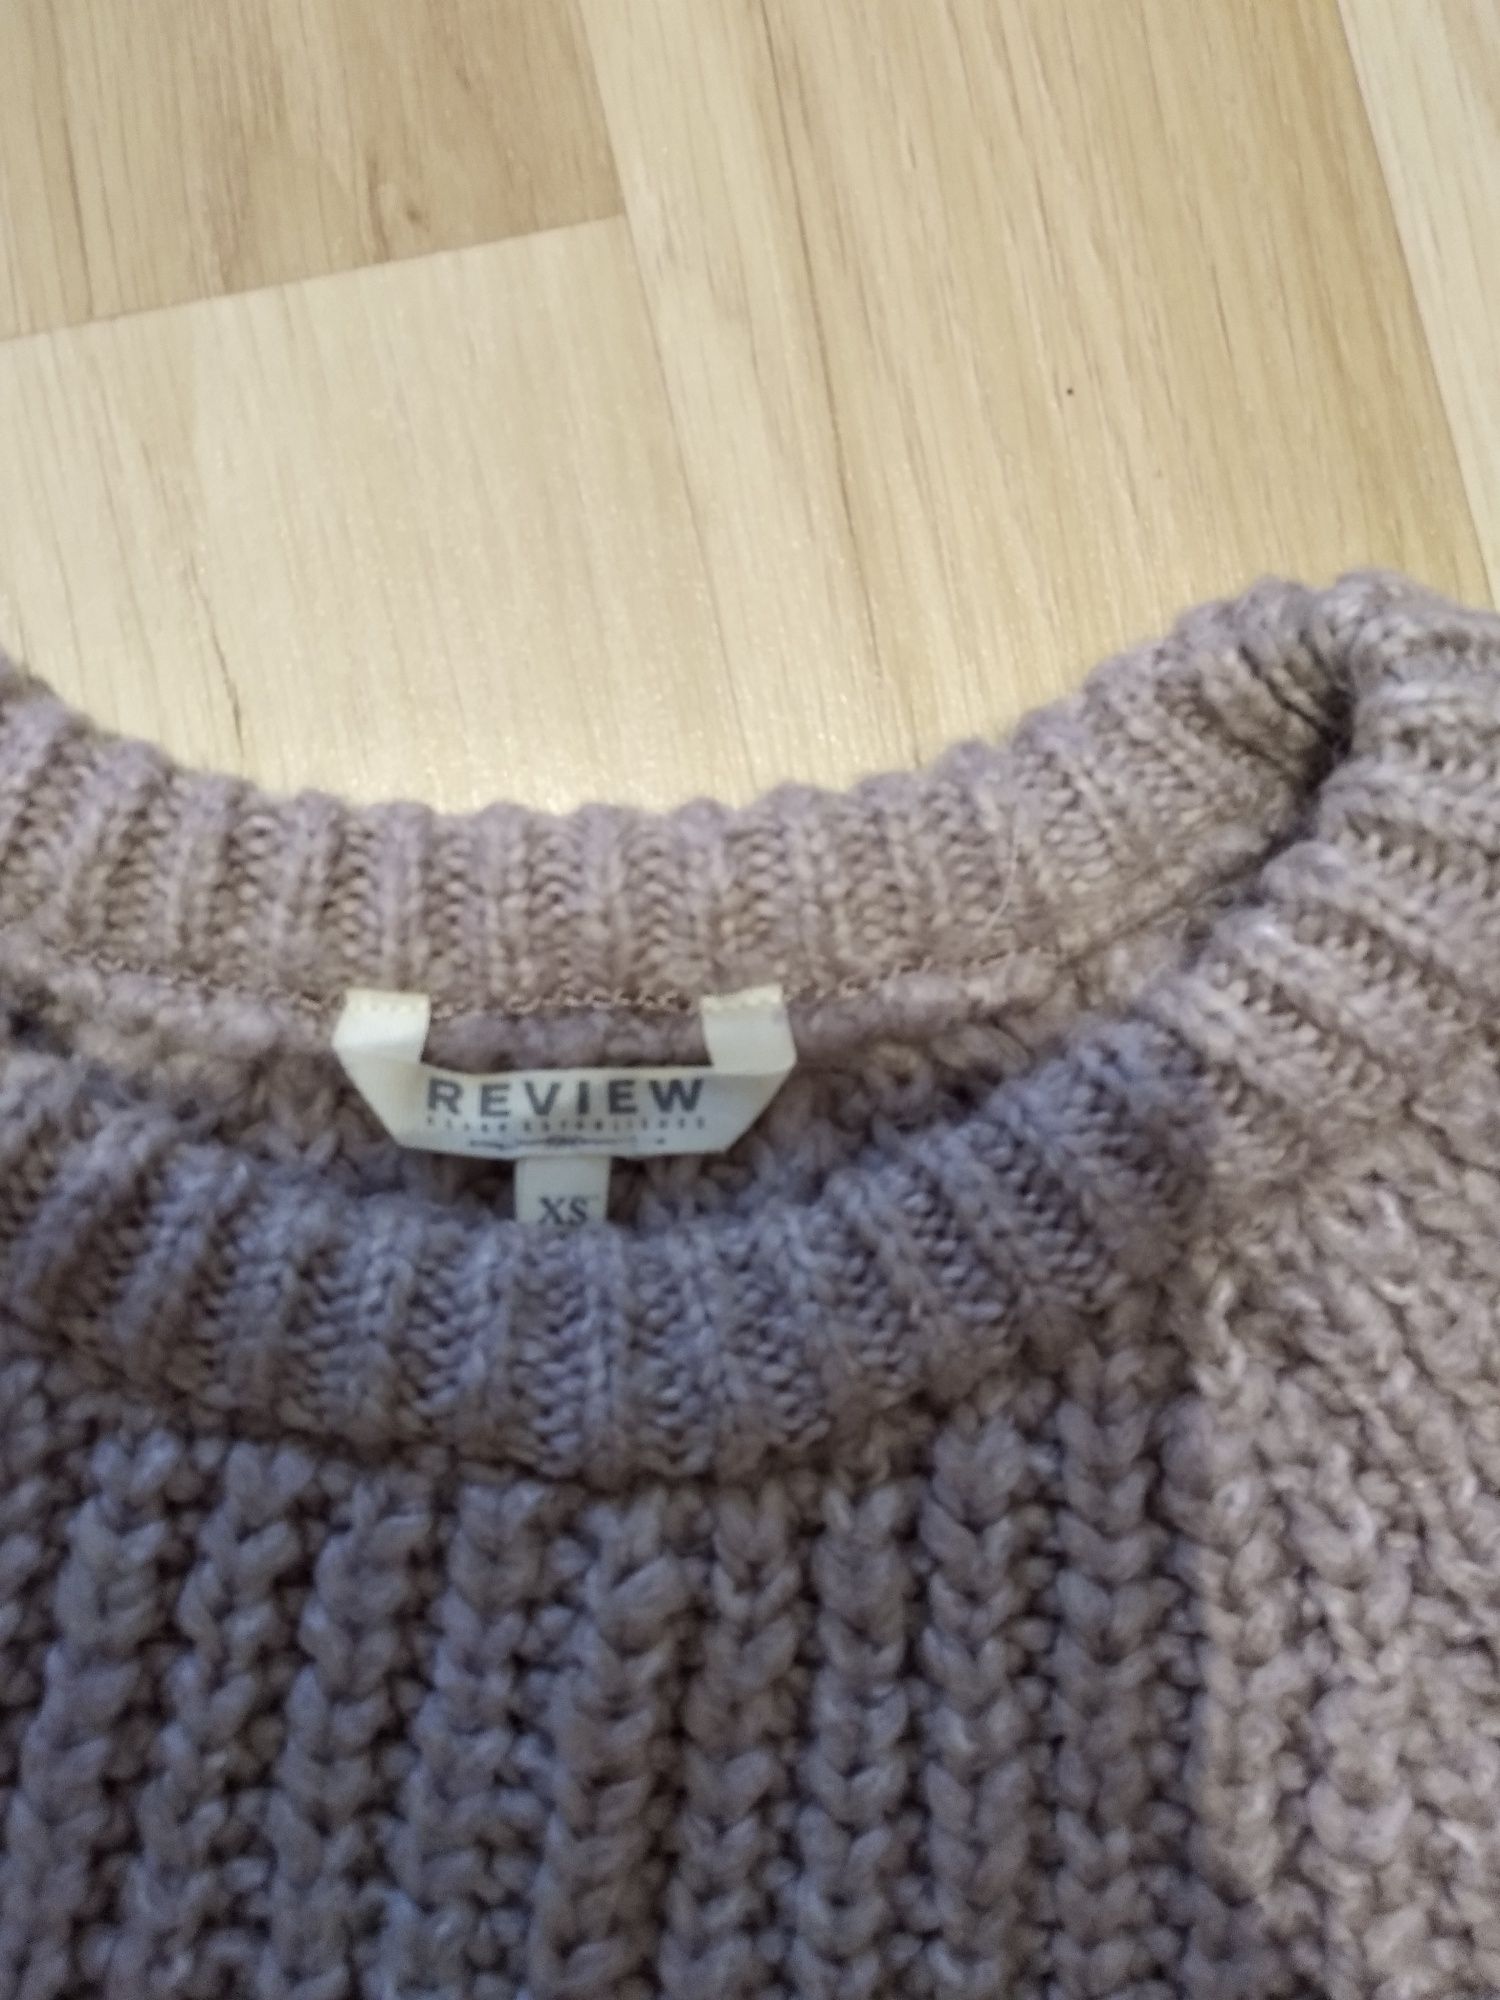 Ciepły sweter damski rozmiar 34 XS review